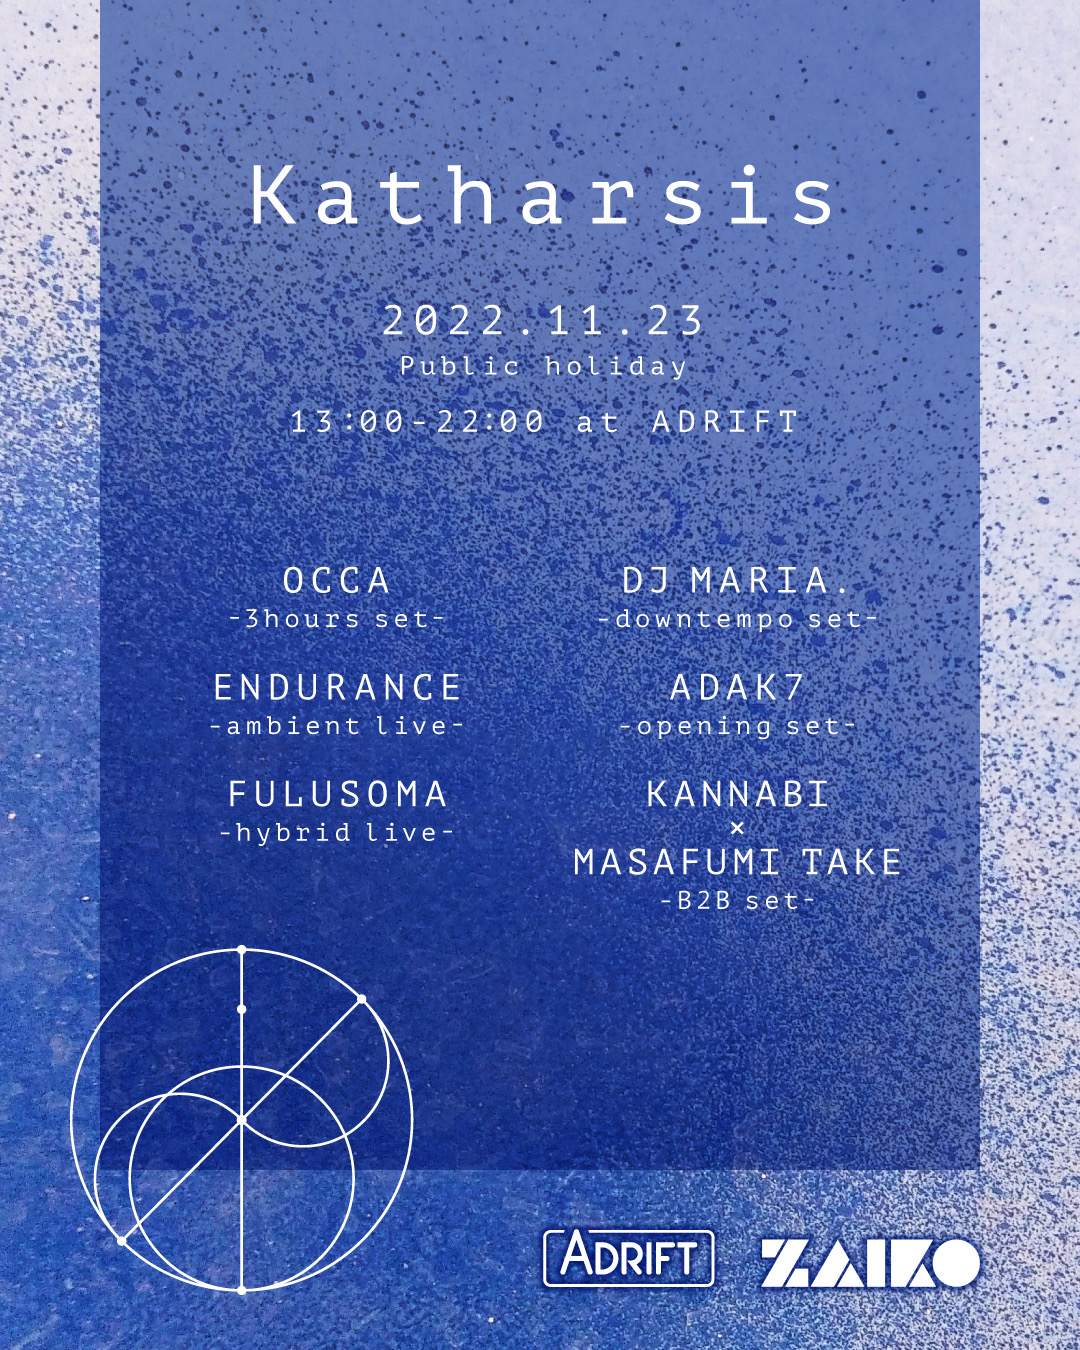 Katharsis - Página frontal